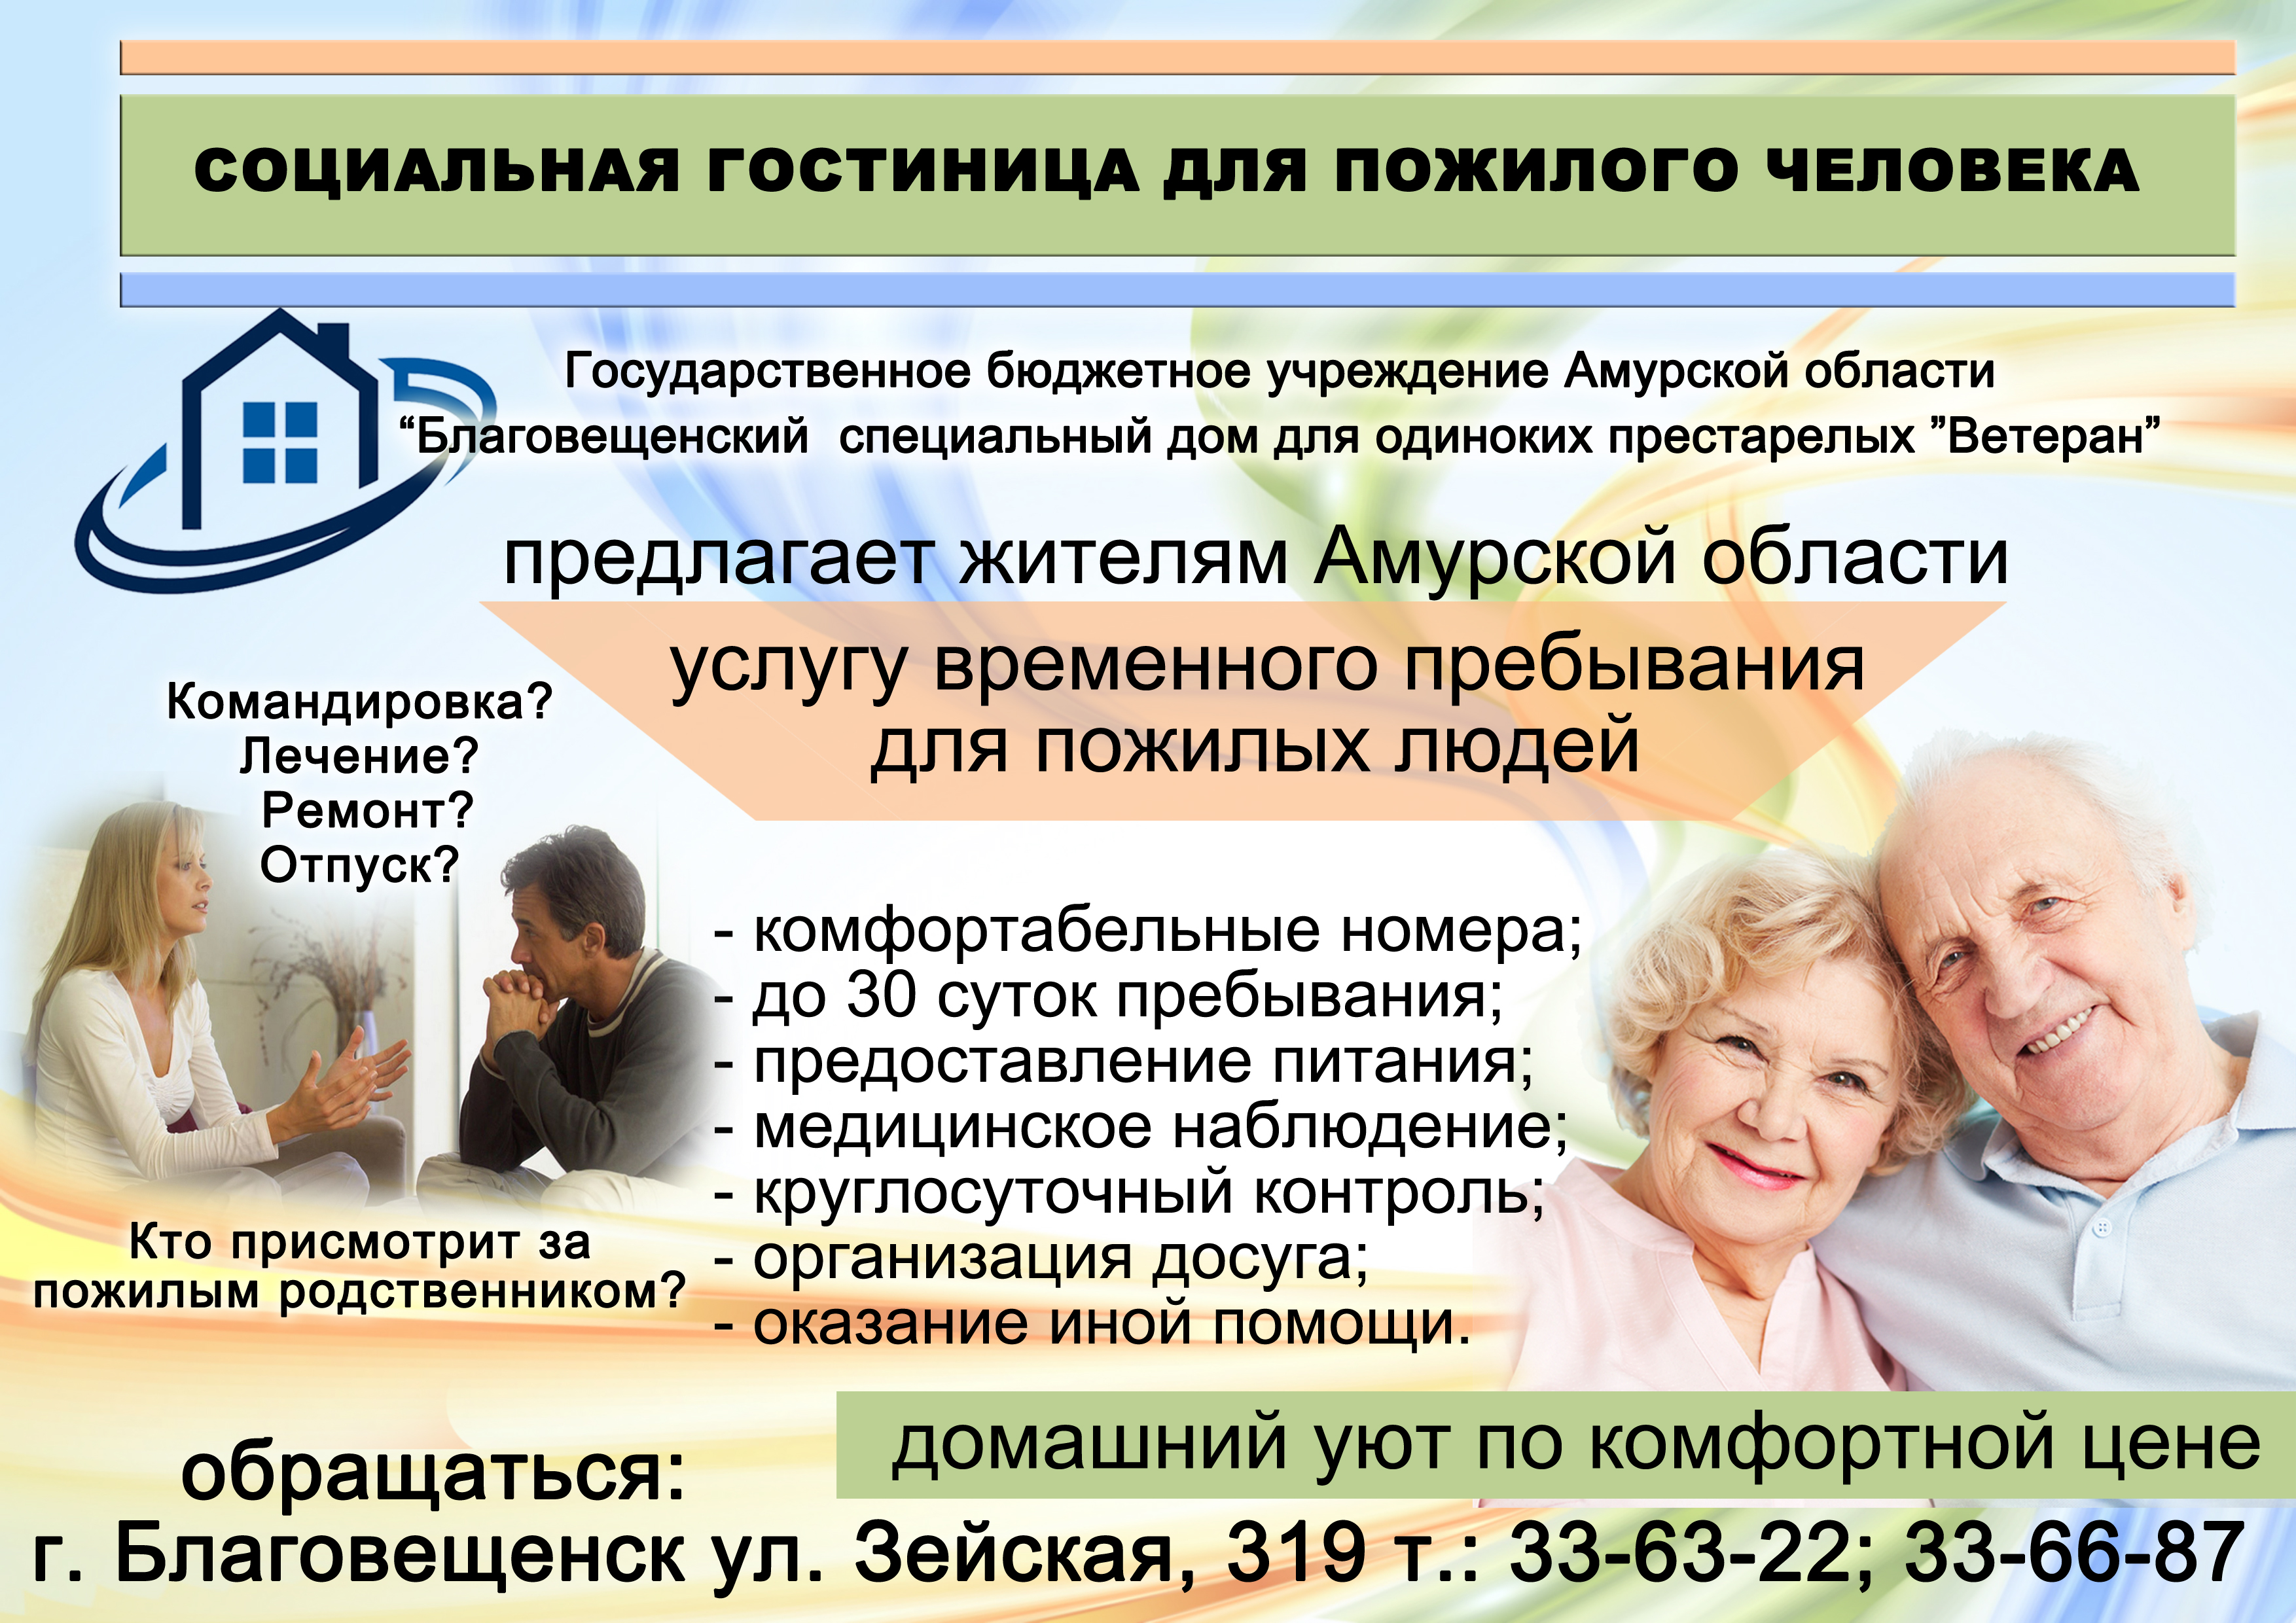 Проекты направленные на пожилых людей. Социальные услуги для пожилых людей. Реклама ко Дню пожилых людей. Реклама для пожилых. Социальный проект для пожилых людей.